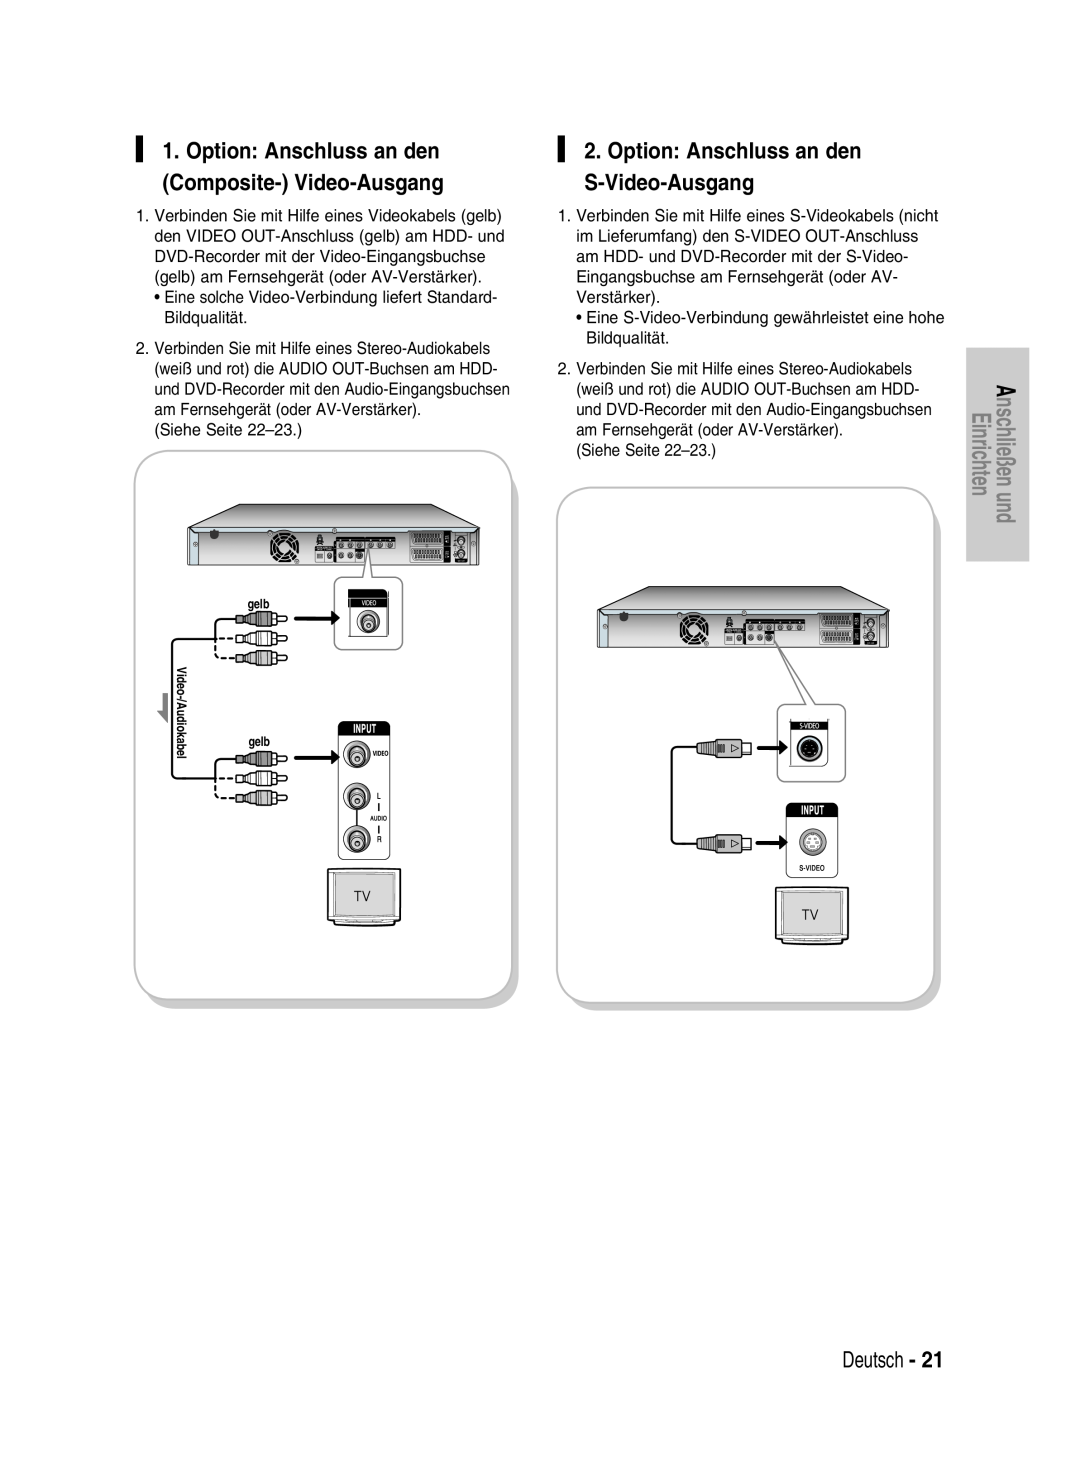 Samsung DVD-HR730/XEB Option Anschluss an den S-Video-Ausgang, Option Anschluss an den Composite- Video-Ausgang, Deutsch 